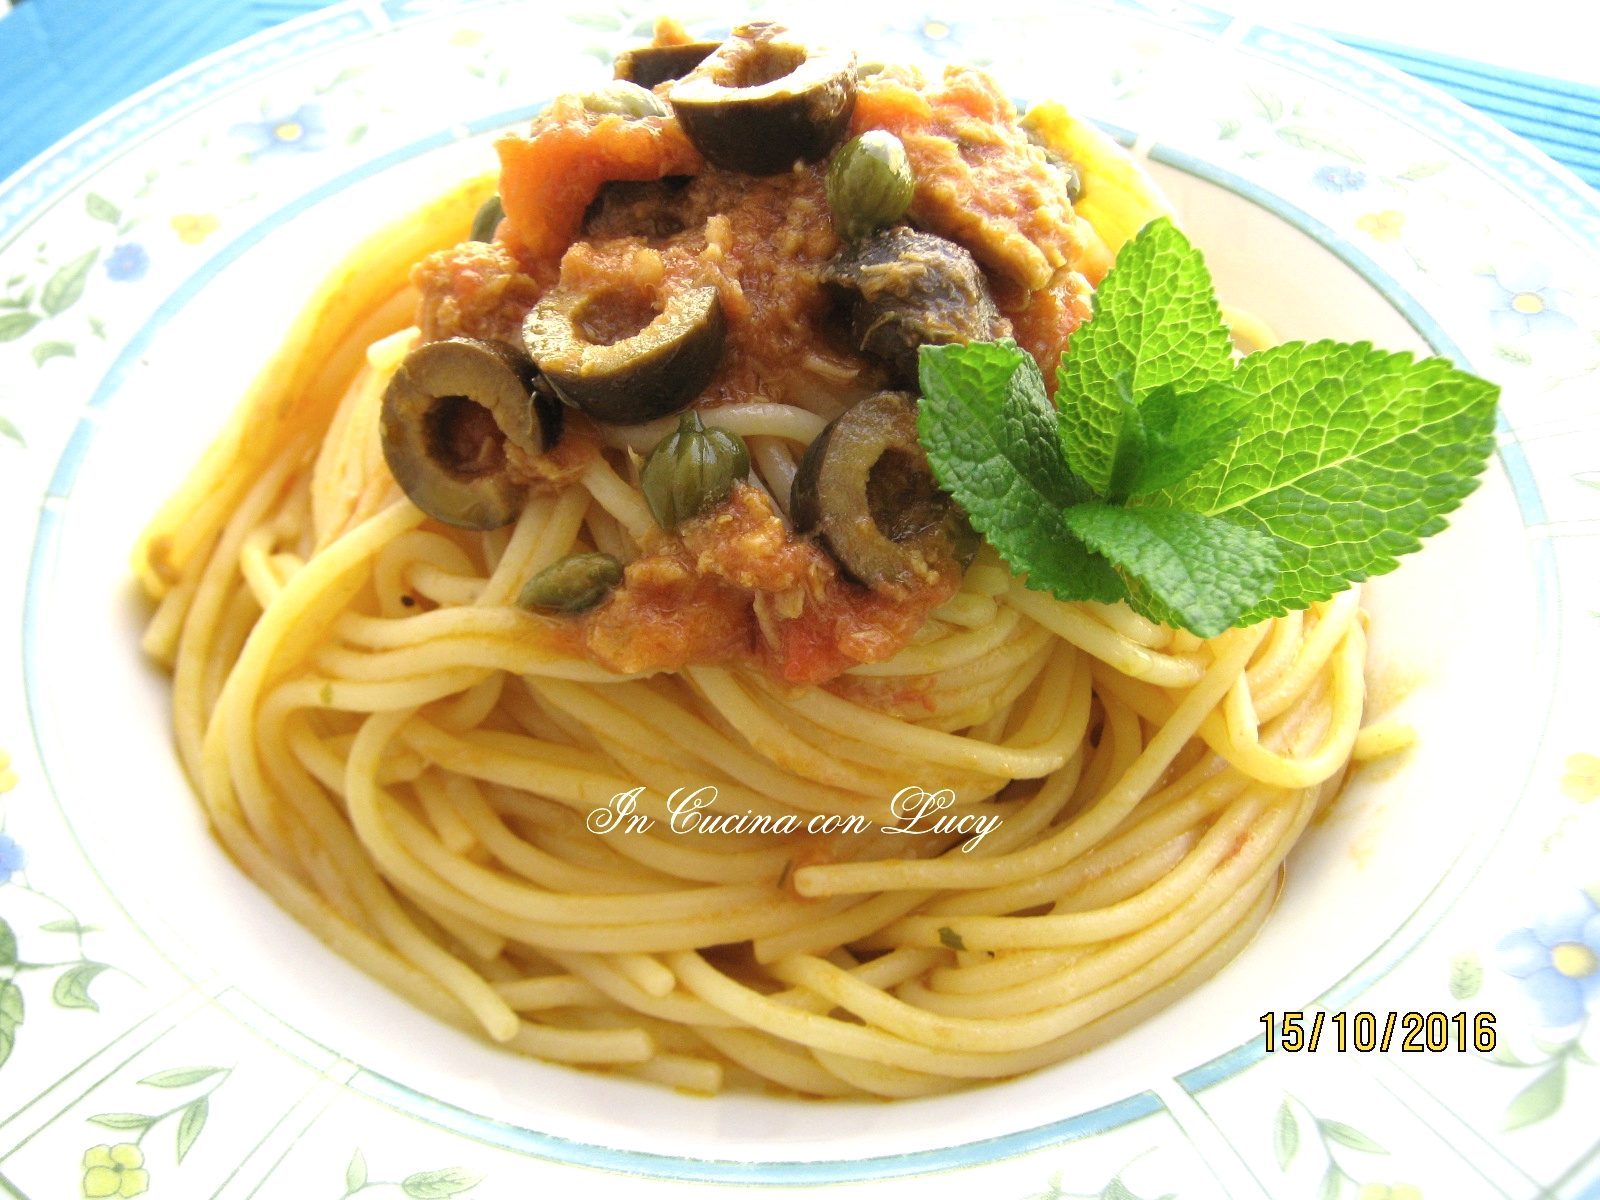 Spaghetti con tonno,olive e capperi